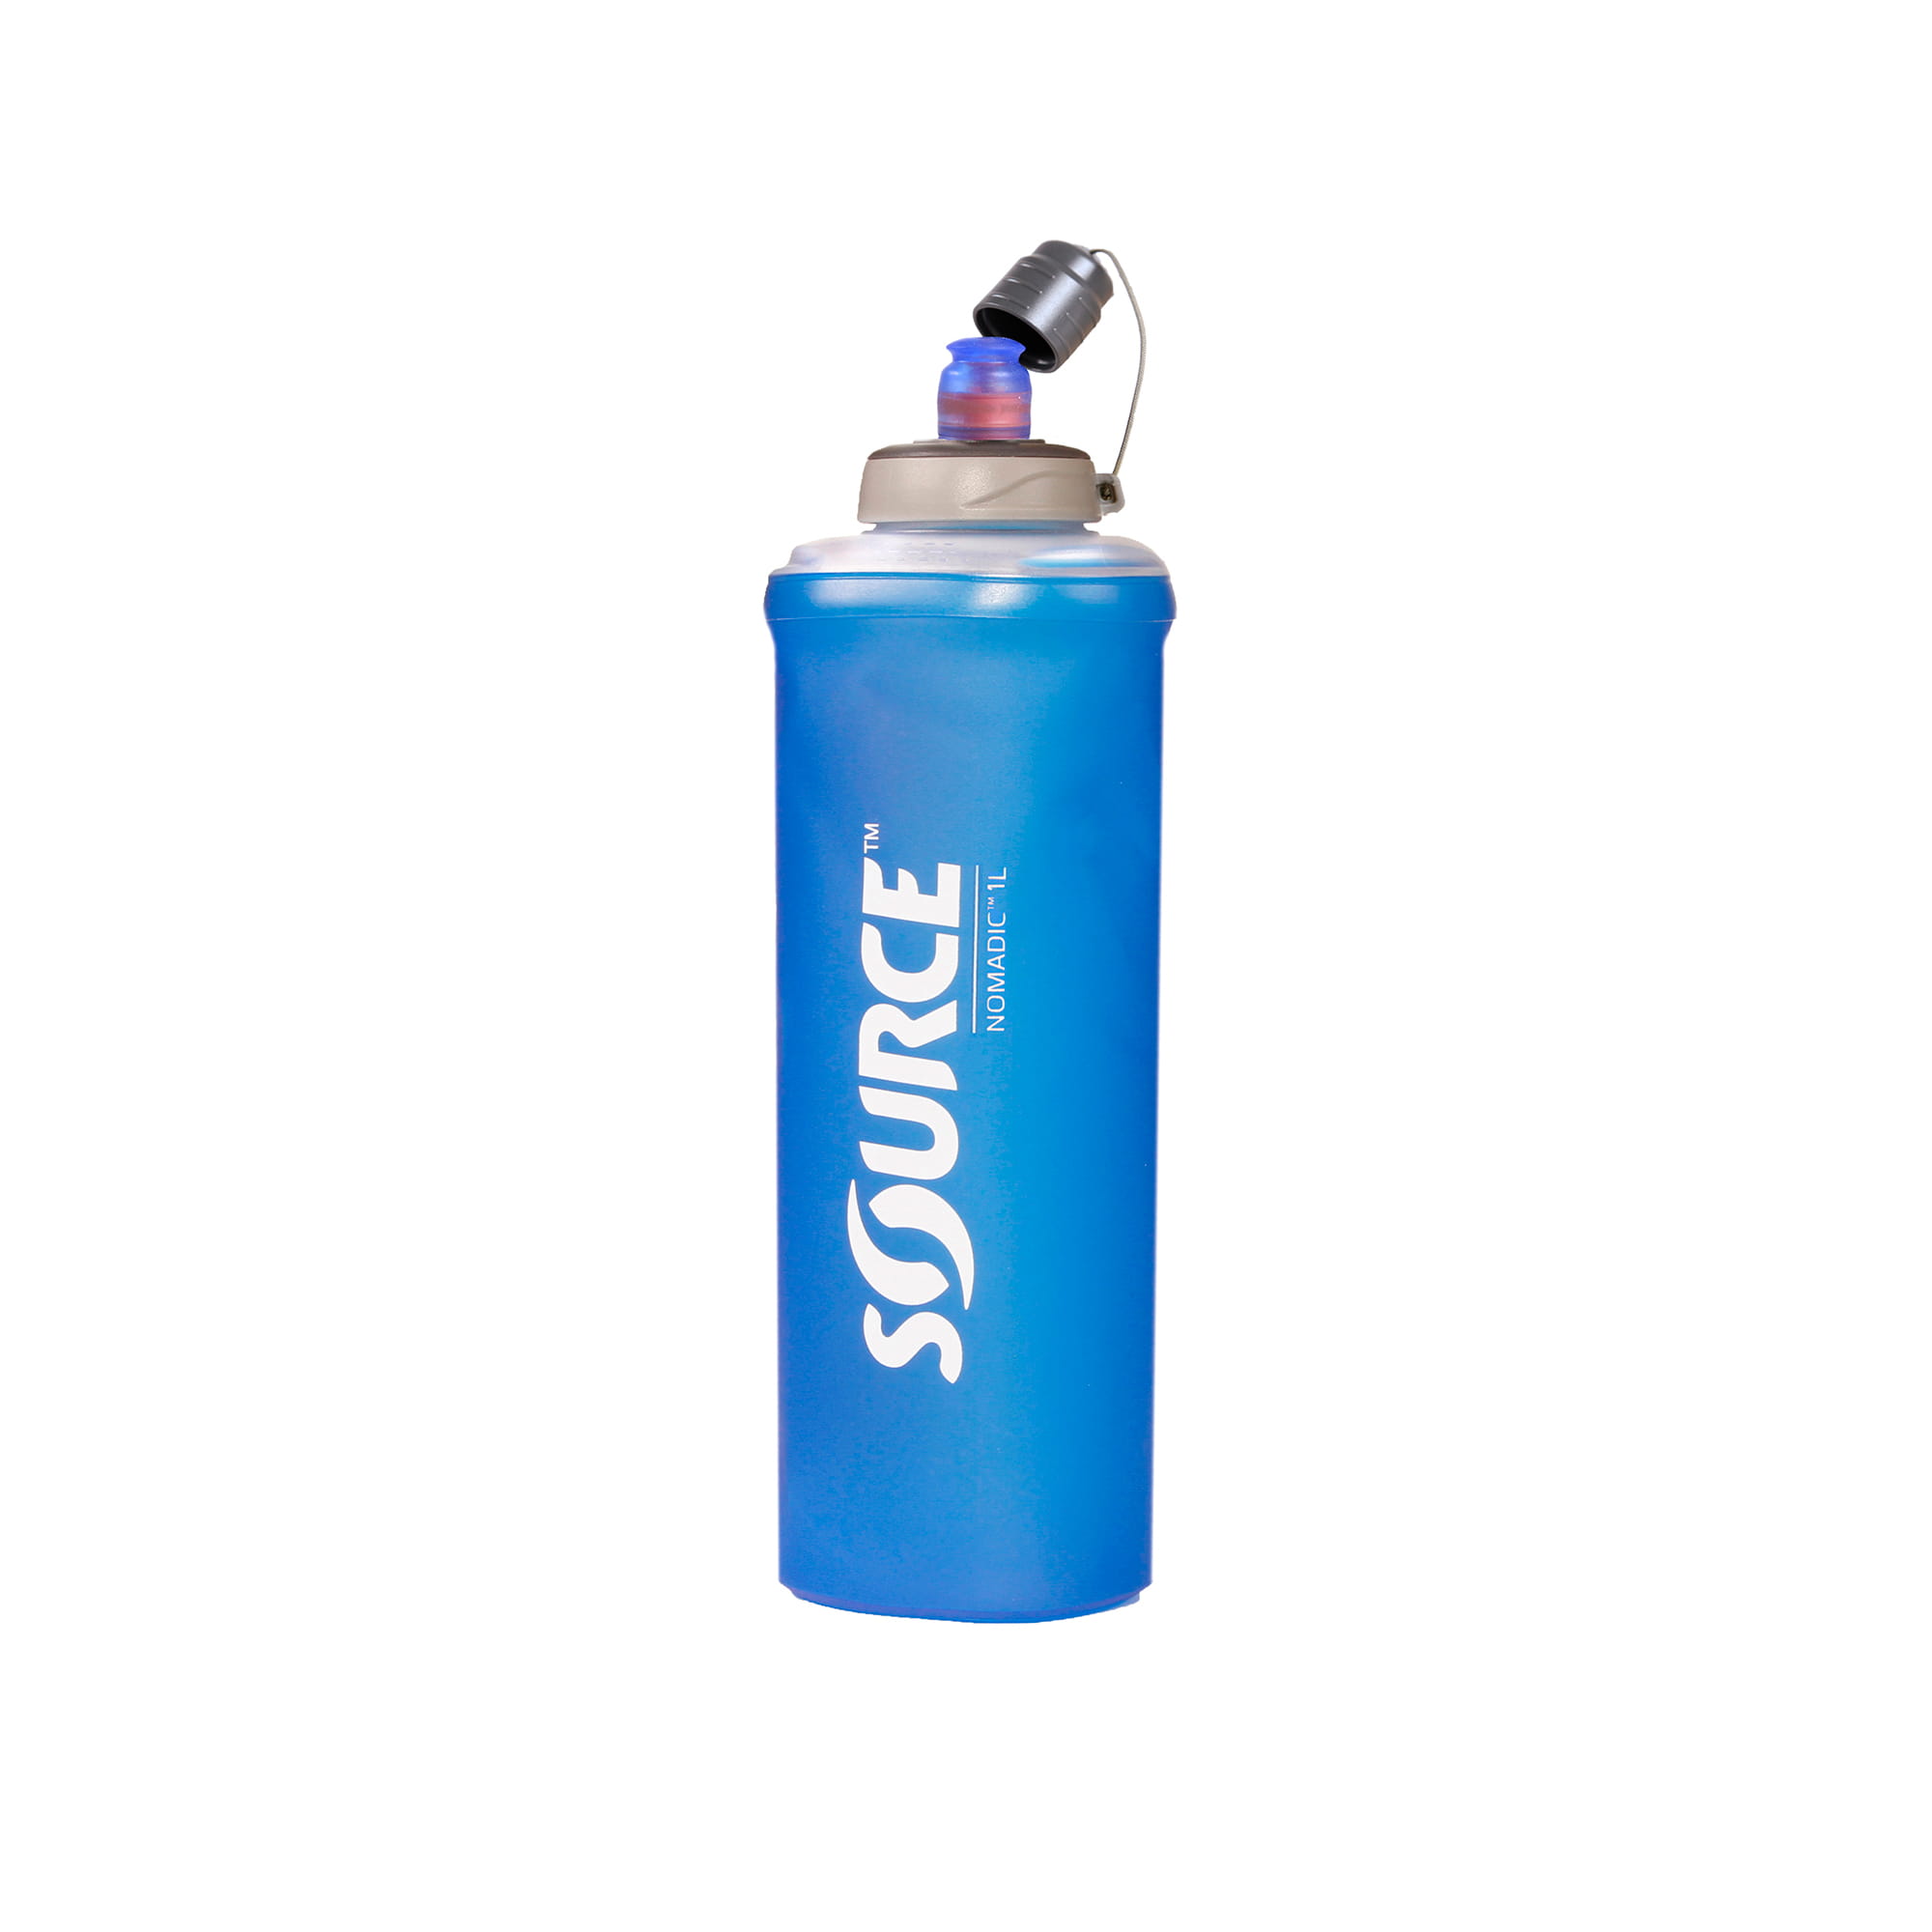 SOURCE Nomadic faltbare Trinkflasche ohne PVC und BPA - 1 L, Blau, Trinkflaschen, Trinkflaschen & Trinksysteme, Zubehör